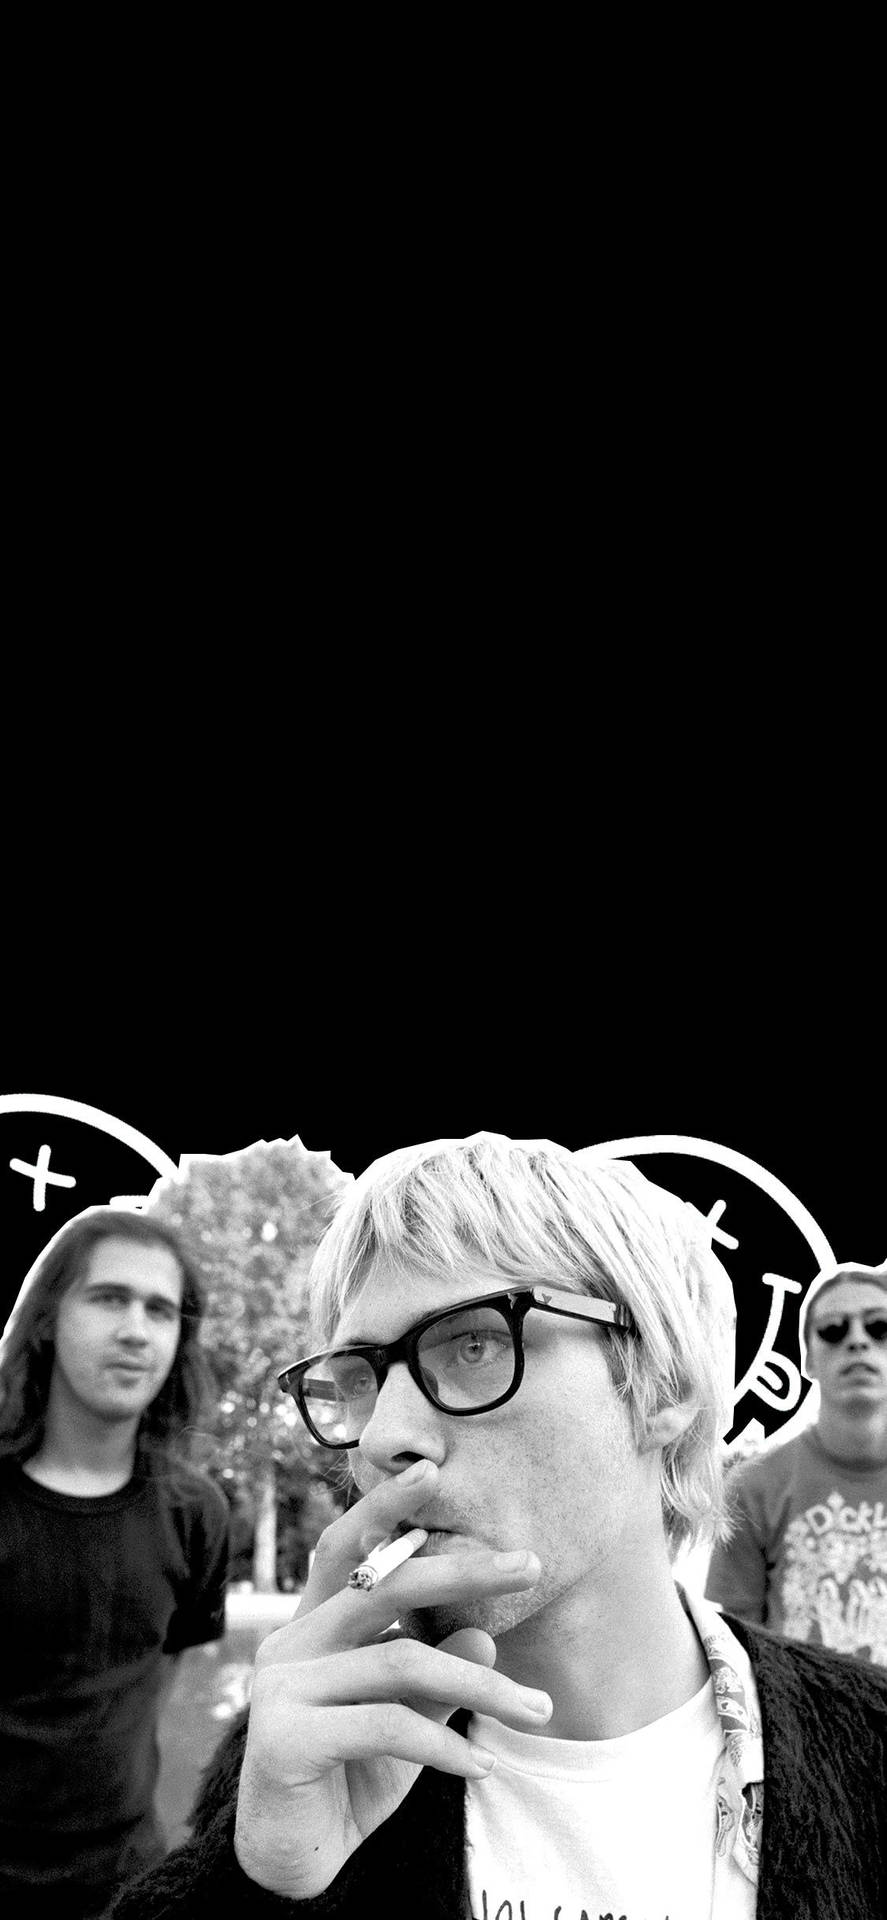 Caption: Legendary Rock Band Nirvana Background